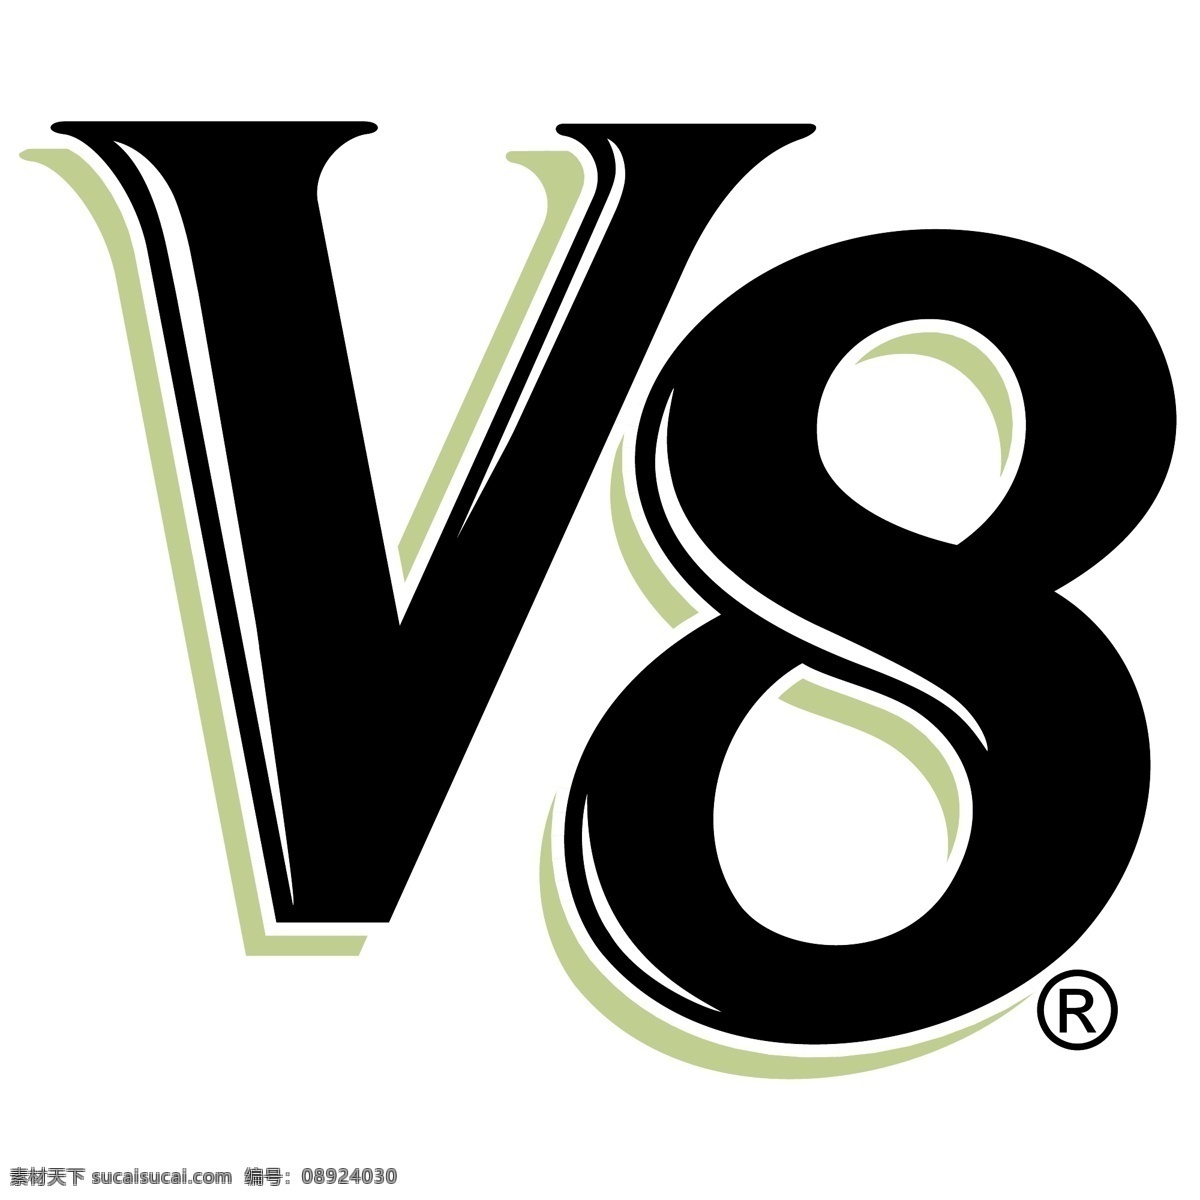 v8 矢量标志下载 免费矢量标识 商标 品牌标识 标识 矢量 免费 品牌 公司 白色